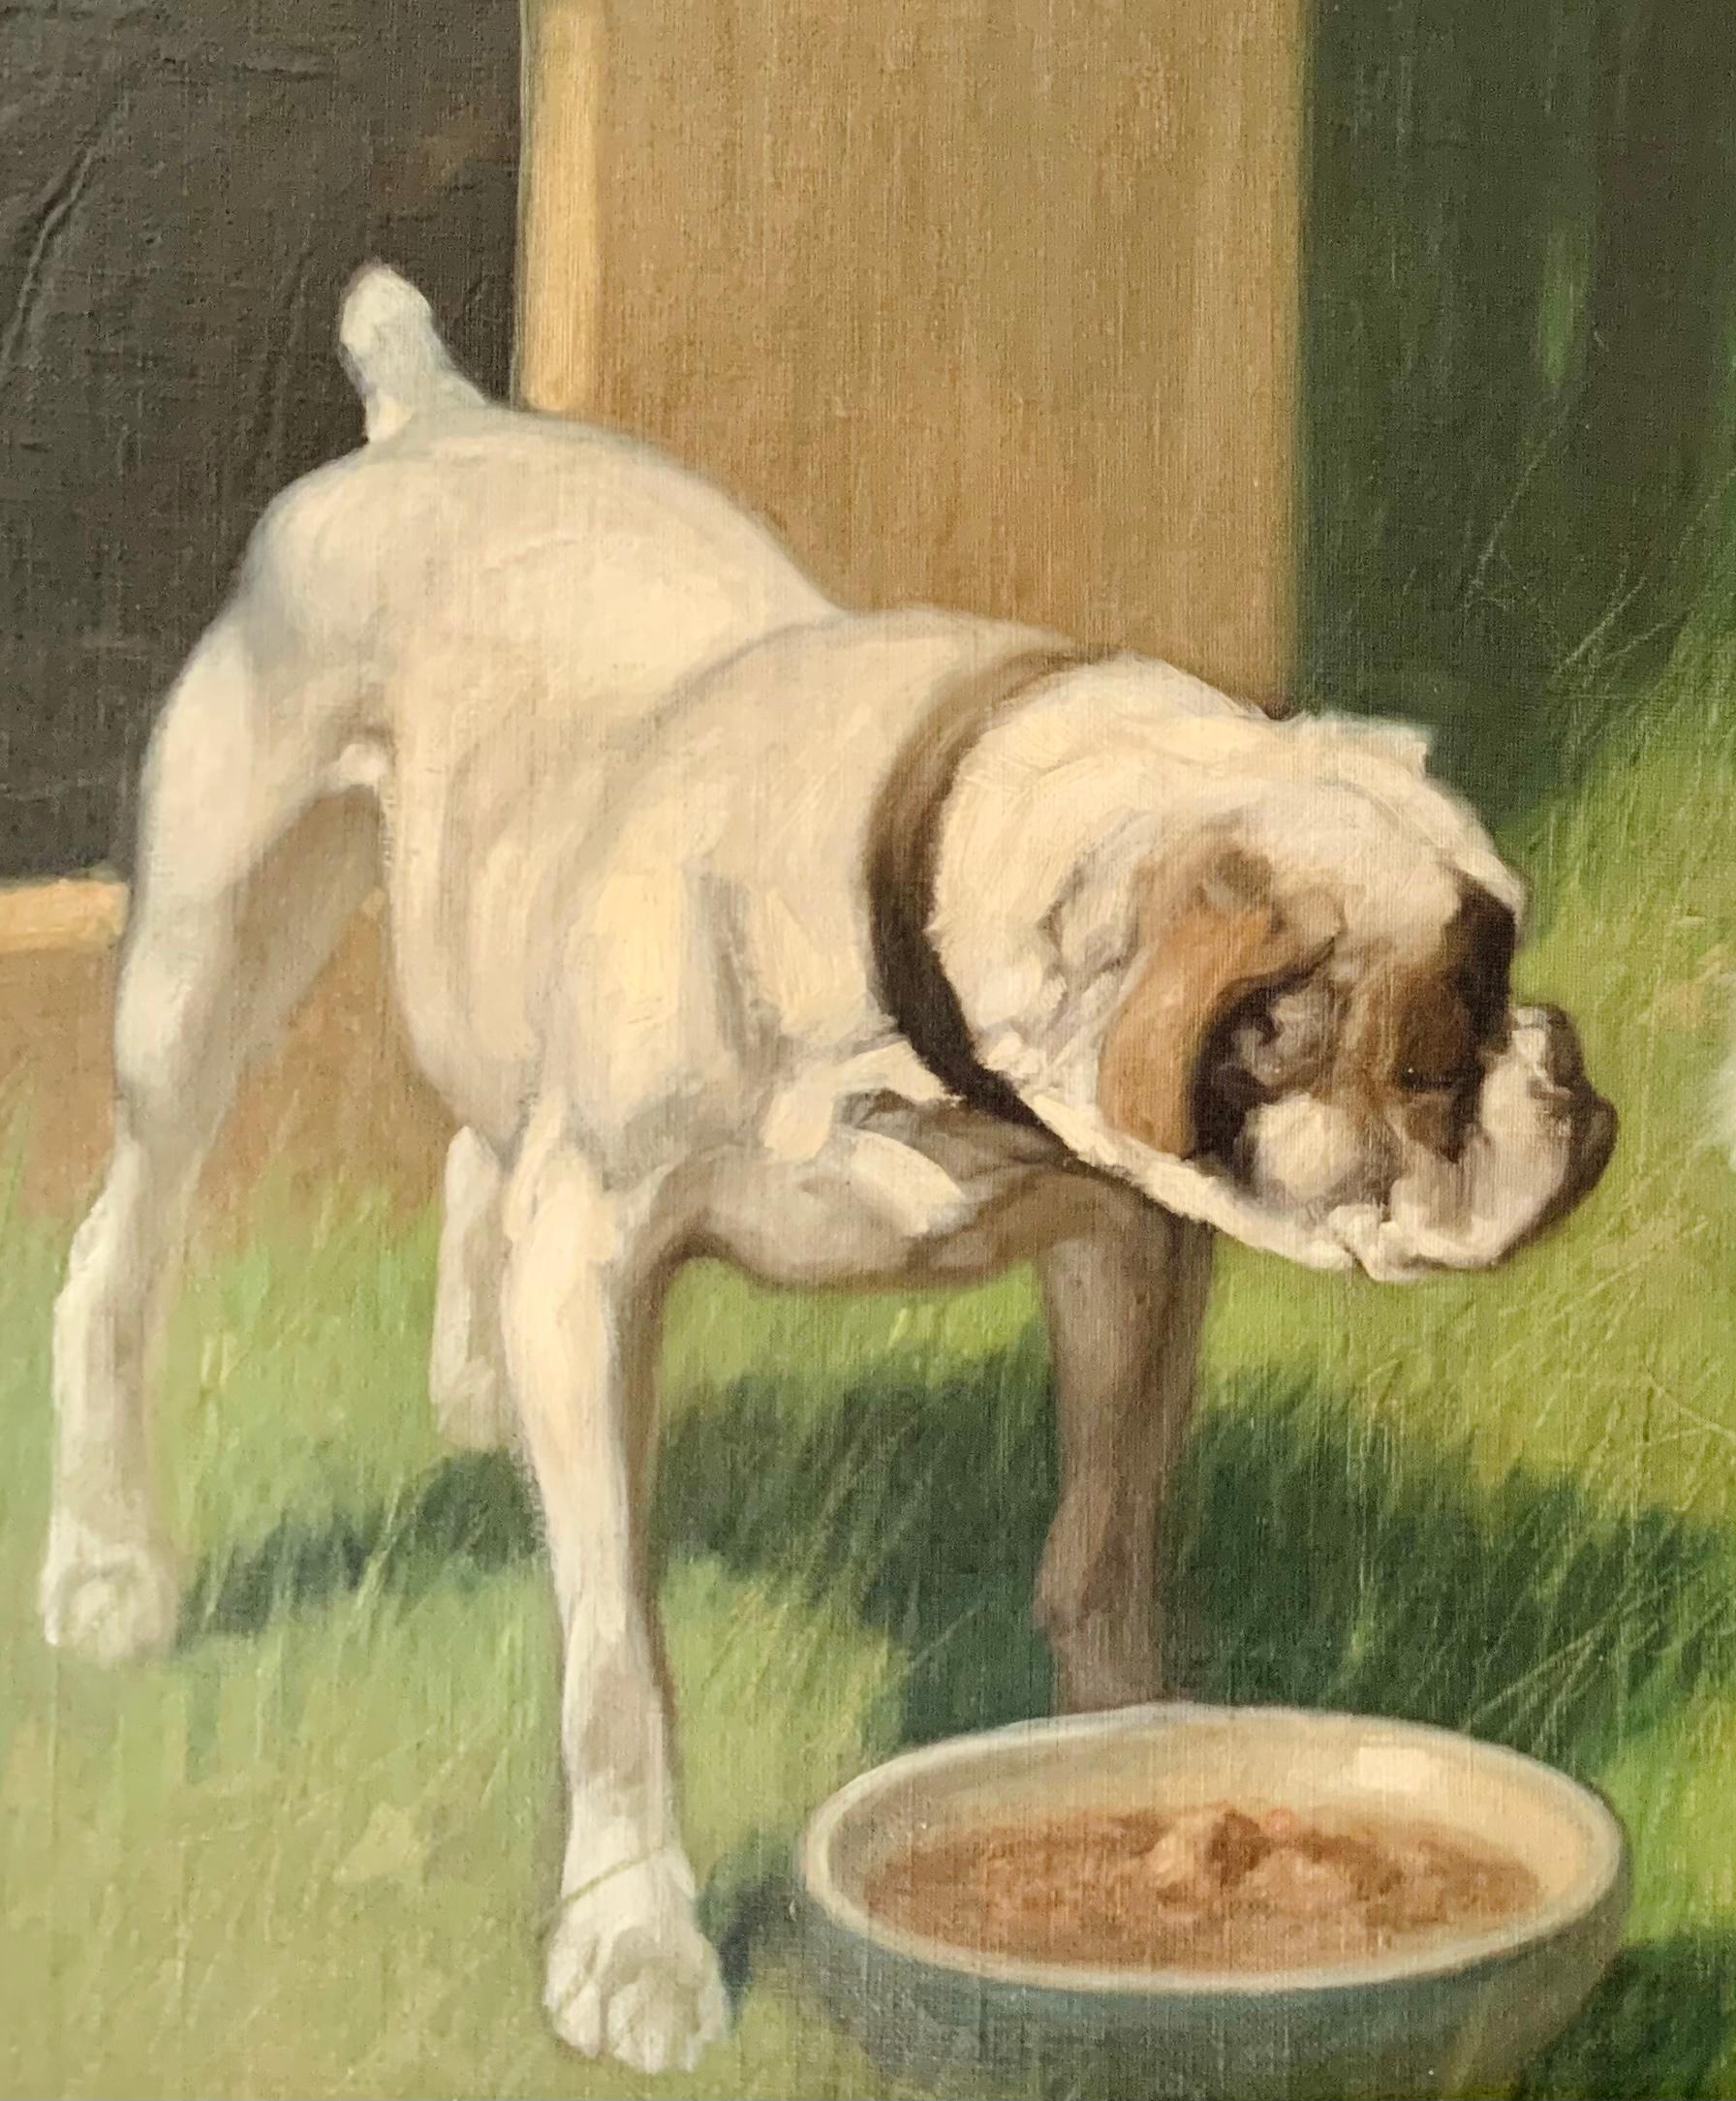 Arthur Heyer, 1871-1932
Huile sur toile, 22